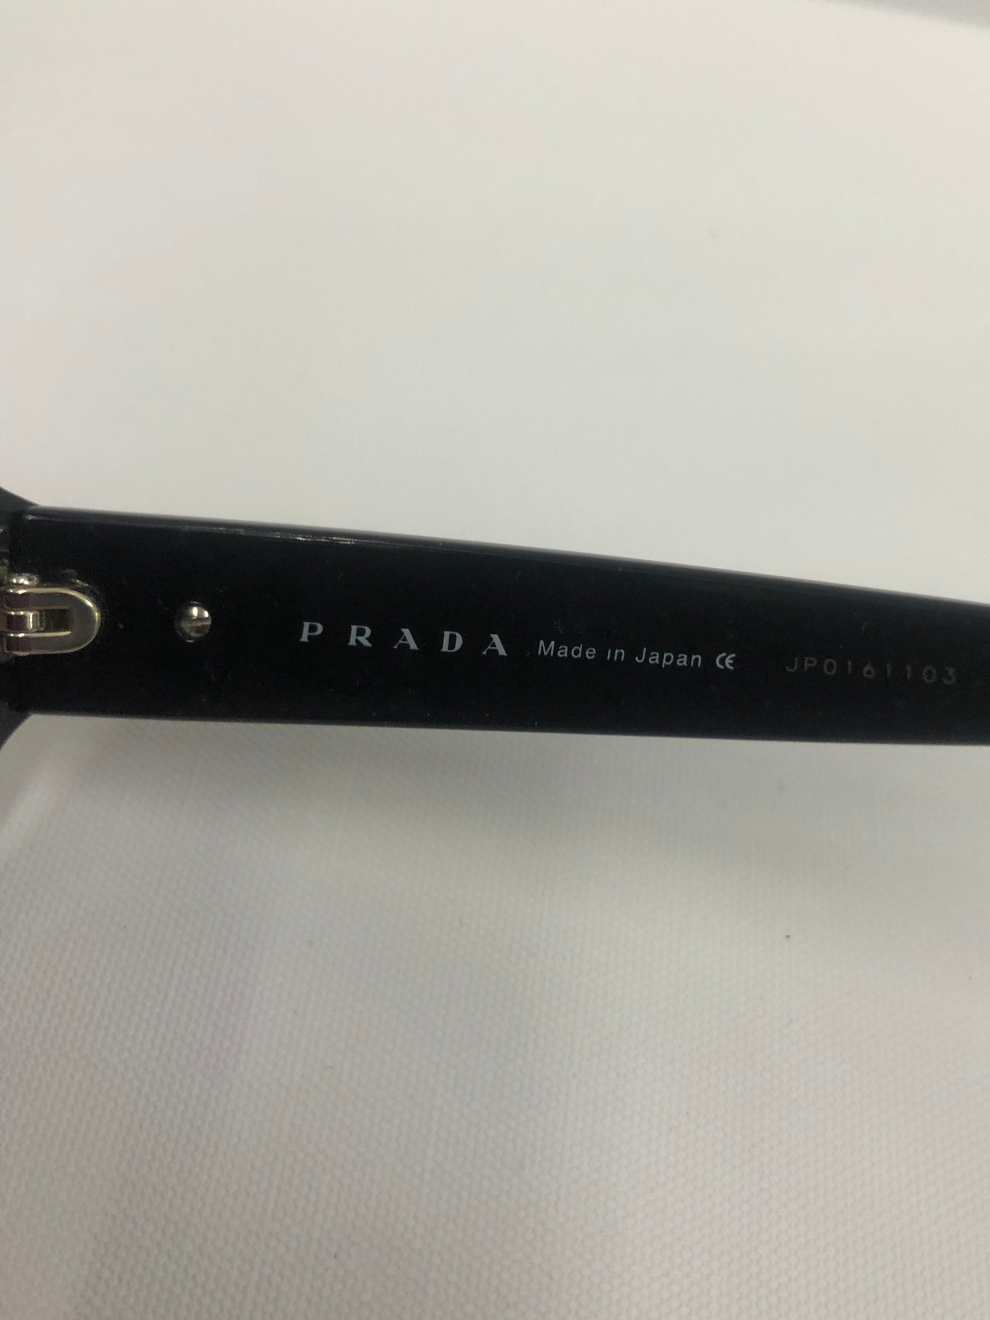 Schmale schwarze Sonnenbrille von Prada